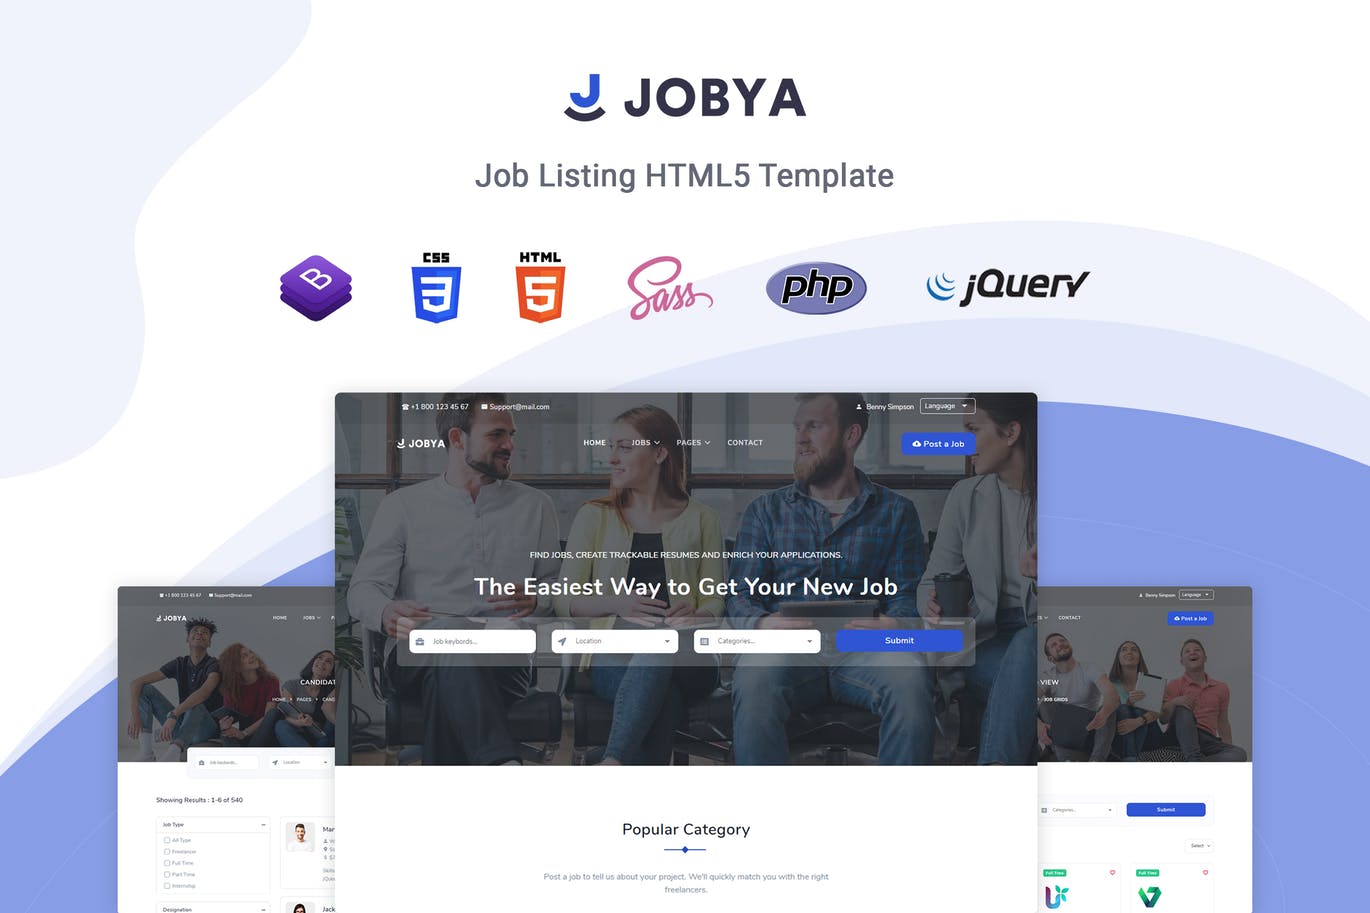 招聘网站/猎头网站设计HTML5模板16图库精选 Jobya – Job Listing HTML5 Template插图